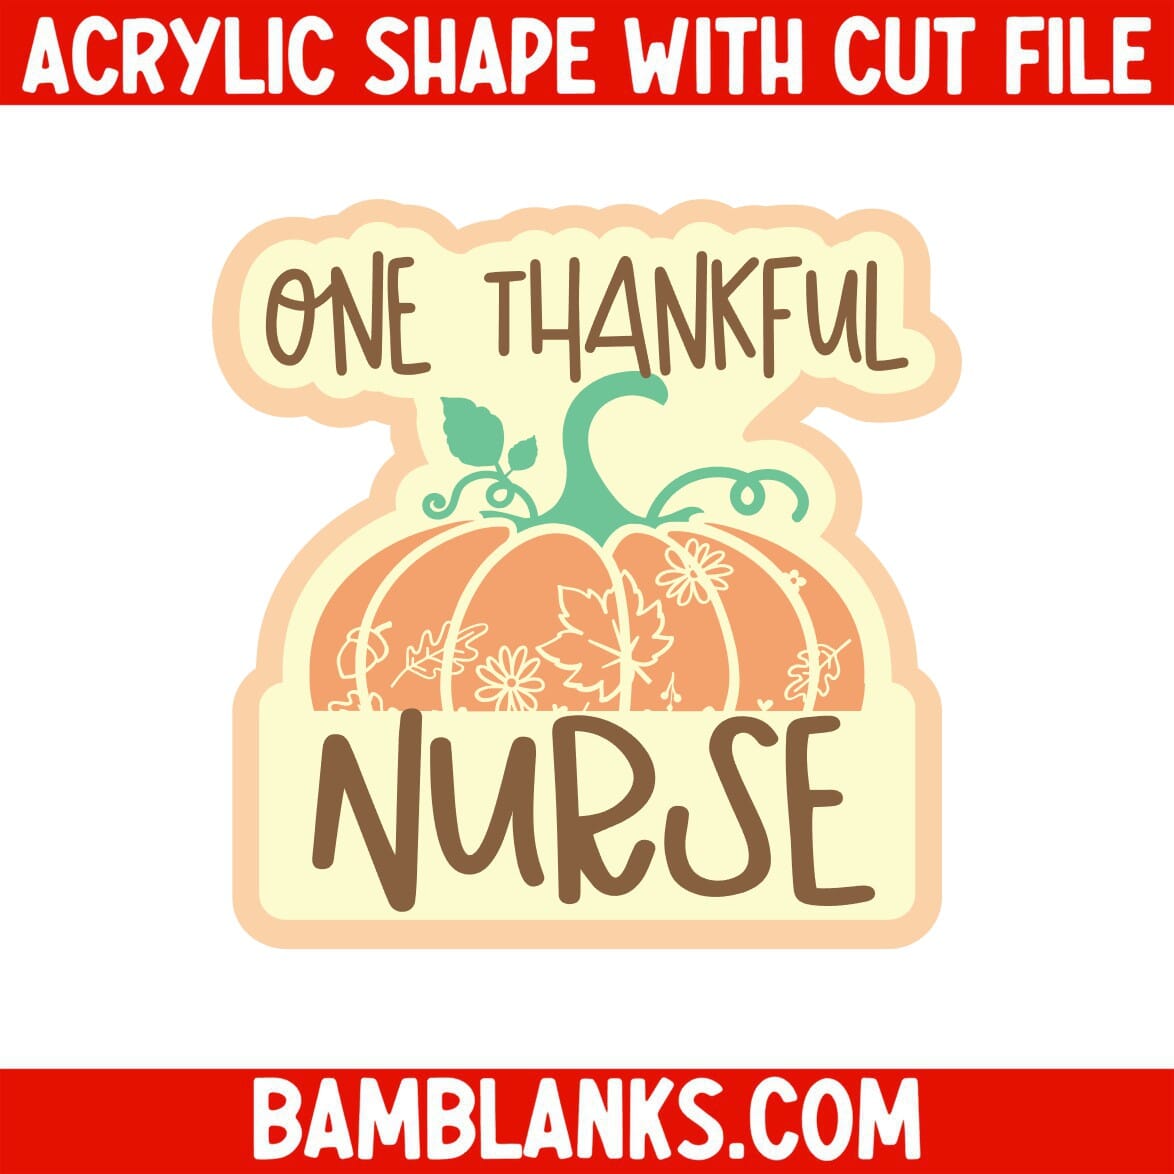 One Thankful Nurse - Acrylic Shape #2227